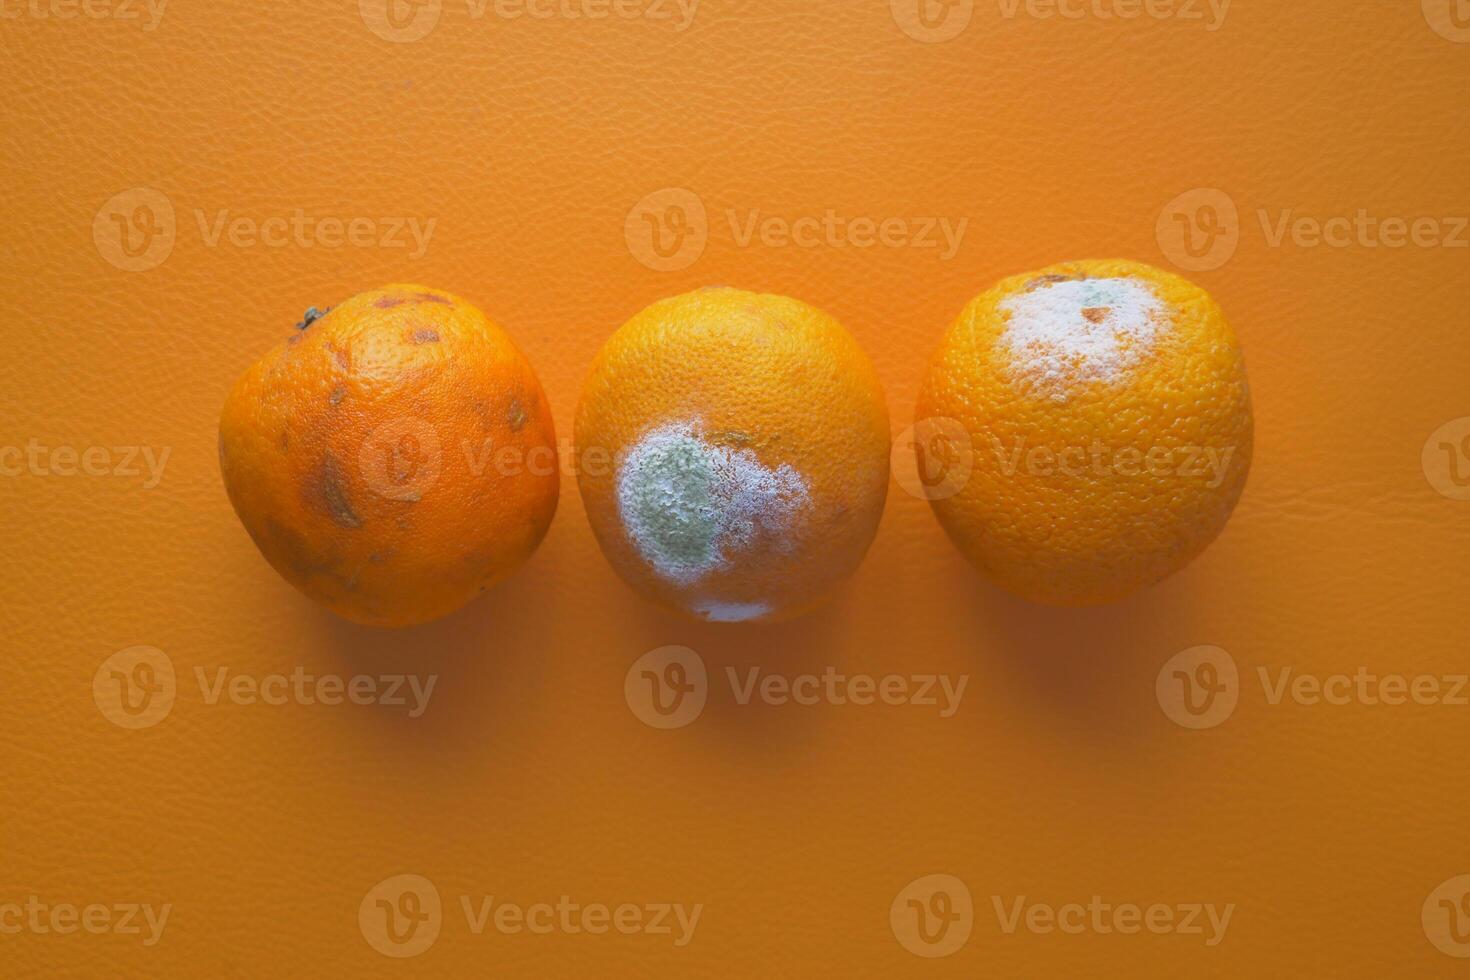 verfault orange. schimmelig Orange auf Farbe Hintergrund foto